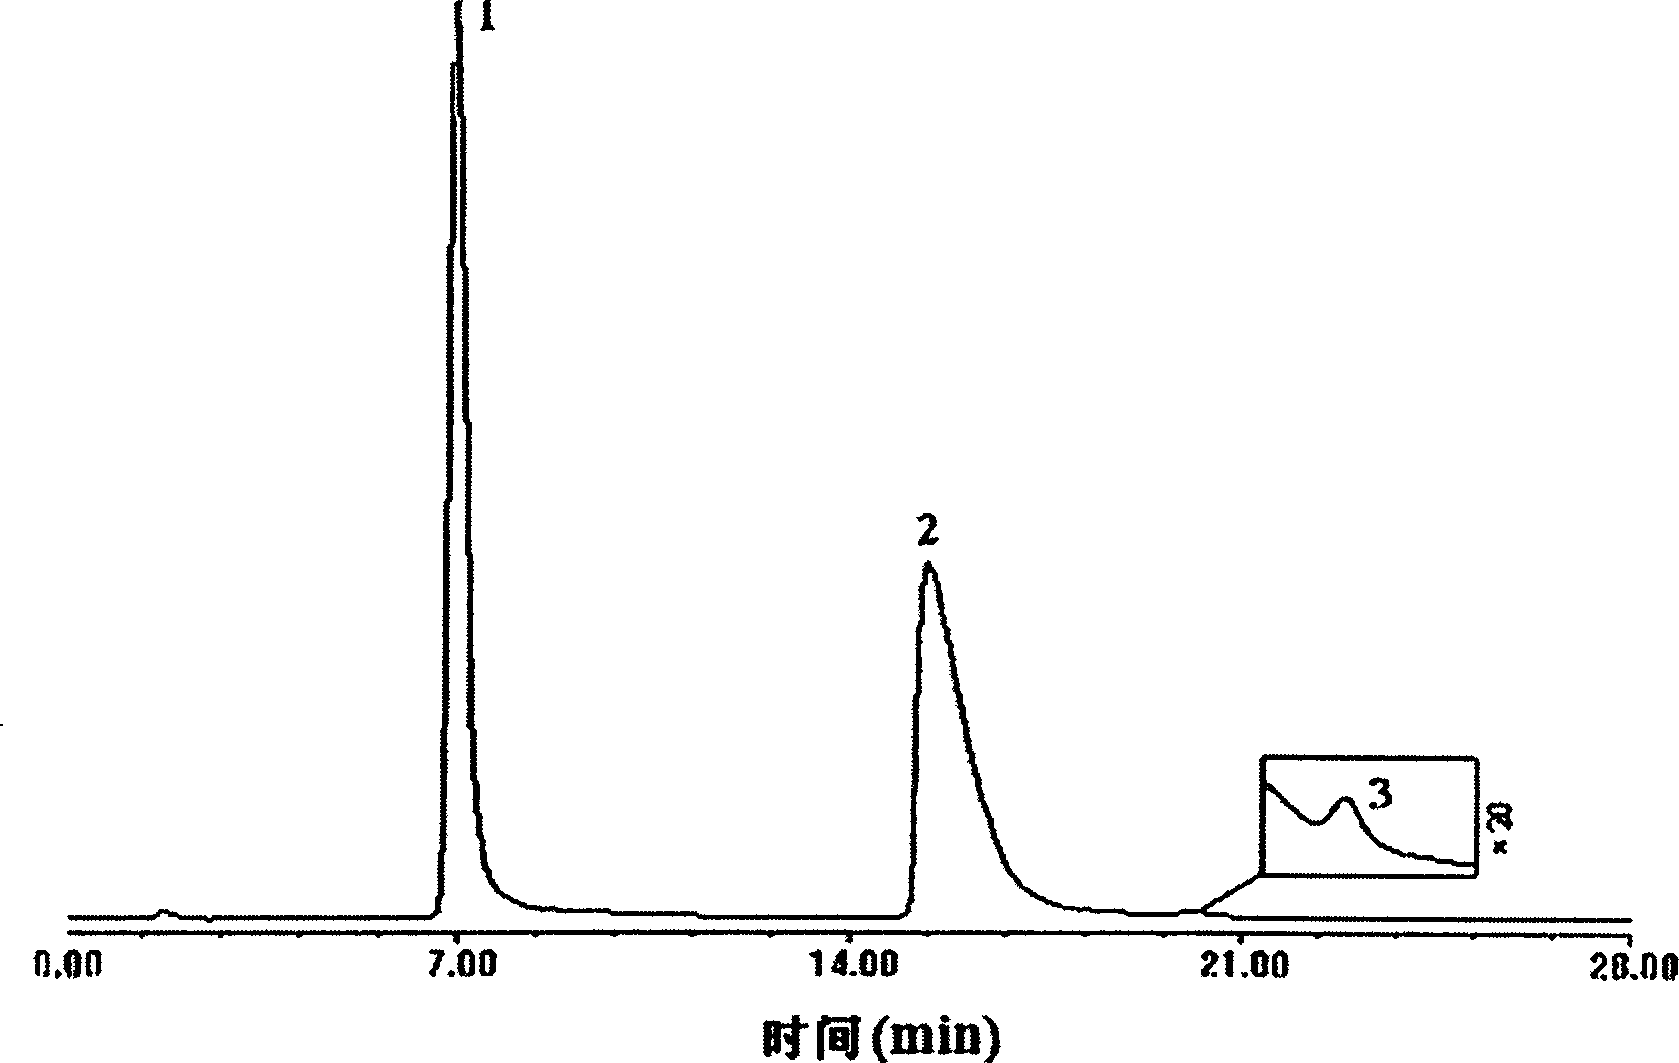 Liquid phase chromatographic analysis method for 3-nitro or 4-nitrophthalic acid and impurities thereof